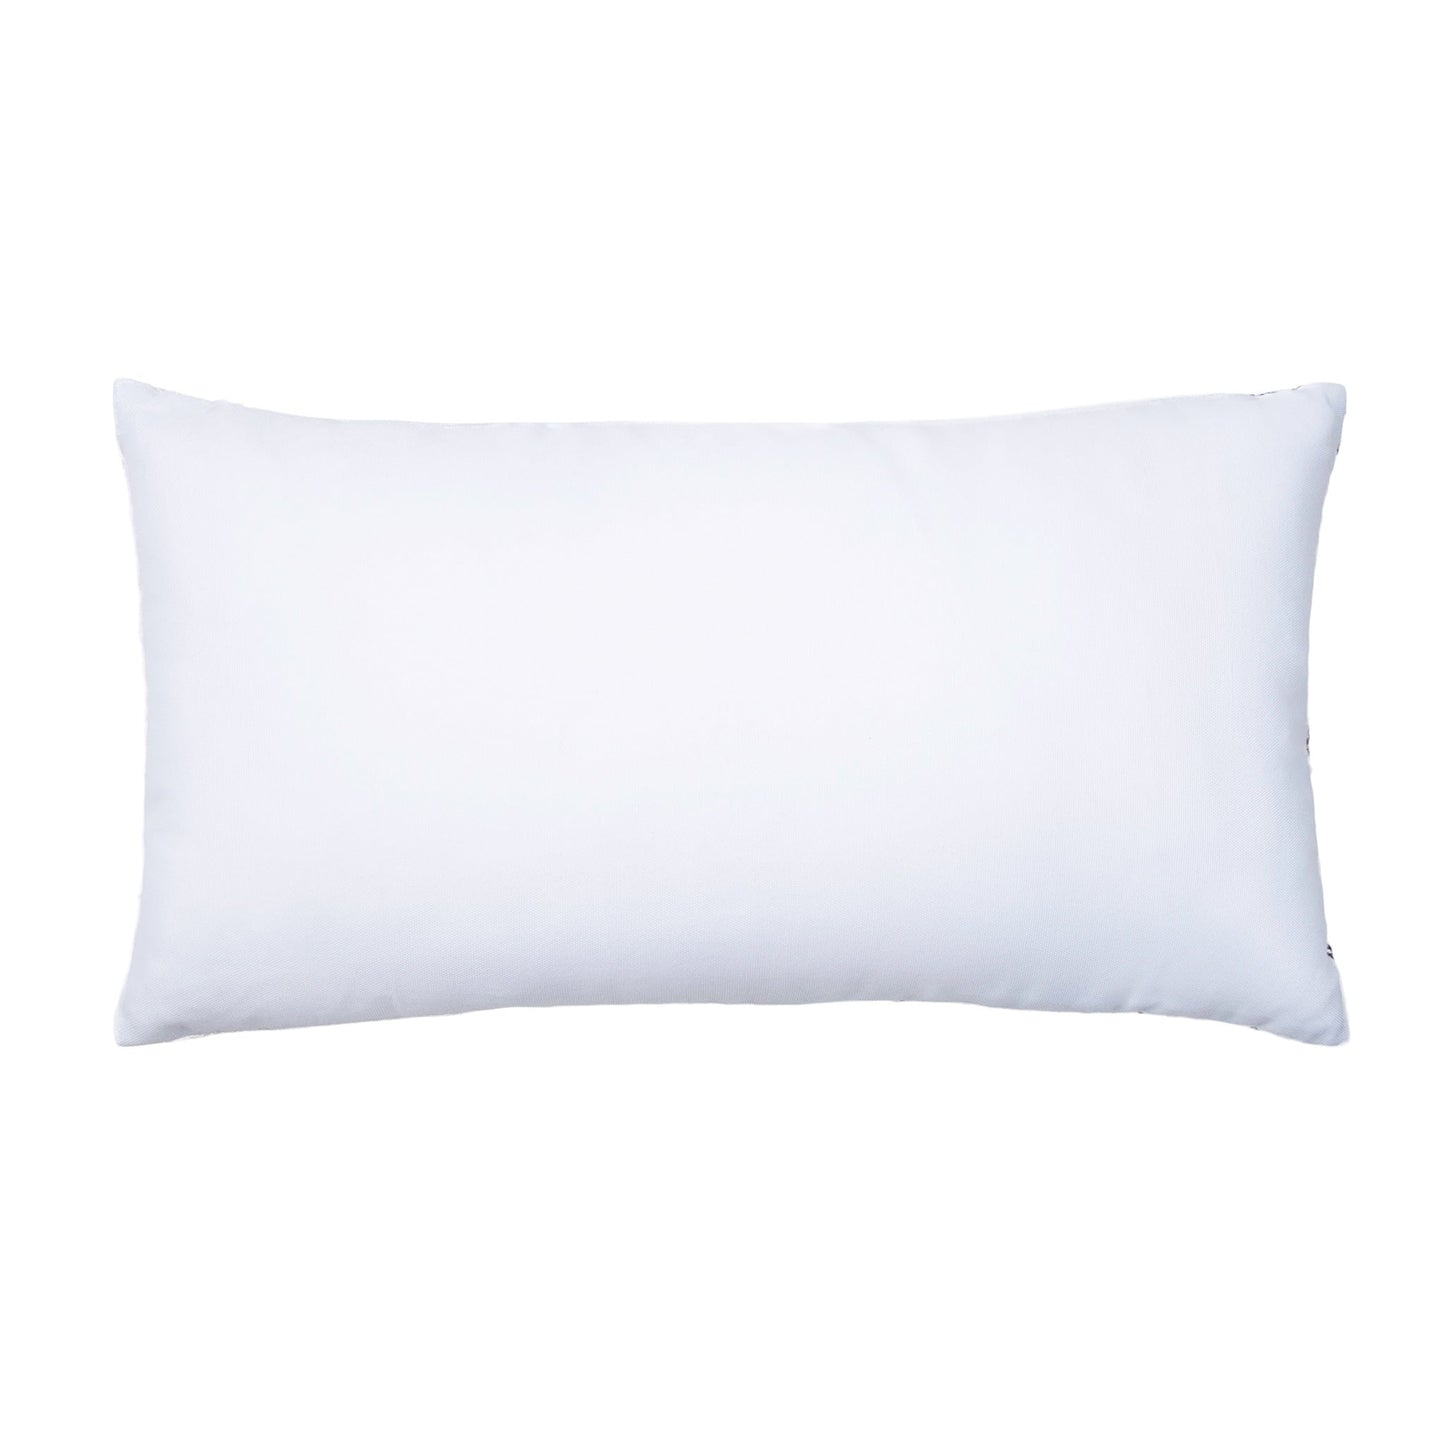 Genevieve Handwoven Indoor/Outdoor 12x22 Lumbar Pillow